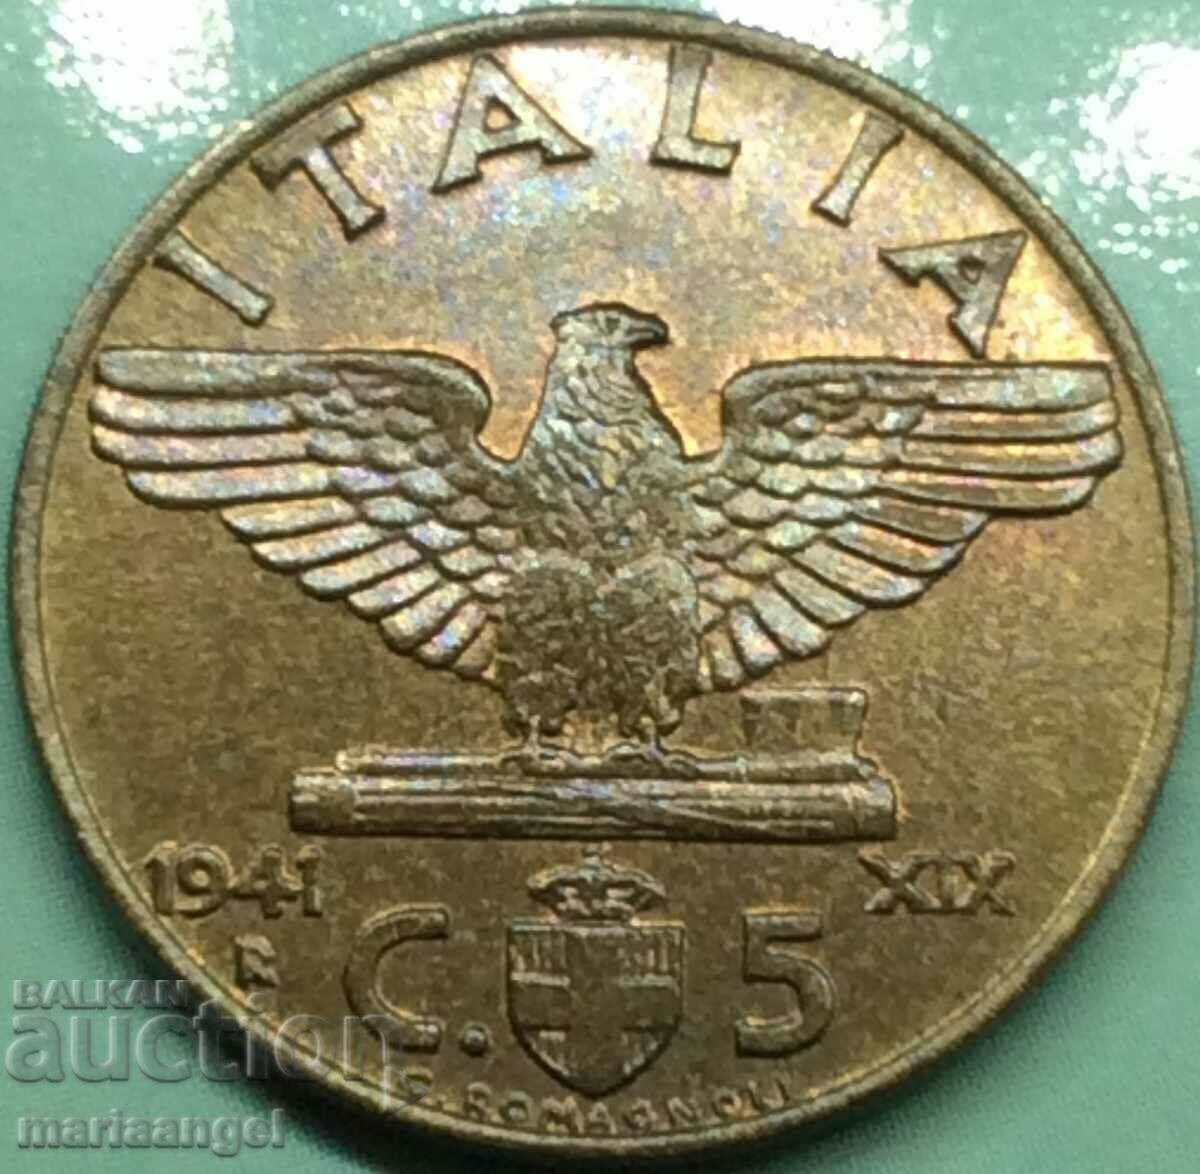 5 Centesimi 1941 Italy Fascist Eagle